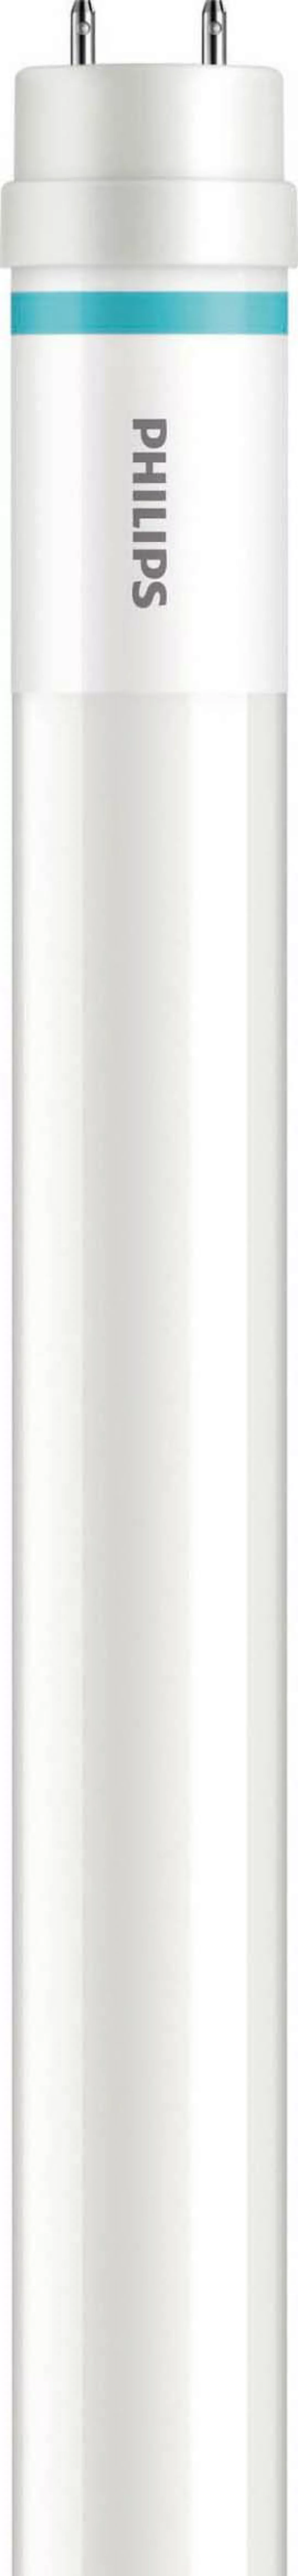 Philips Lighting LED-Tube 1500mm HO20.5W 830T8 MLEDtubeVLE#64691200 günstig online kaufen